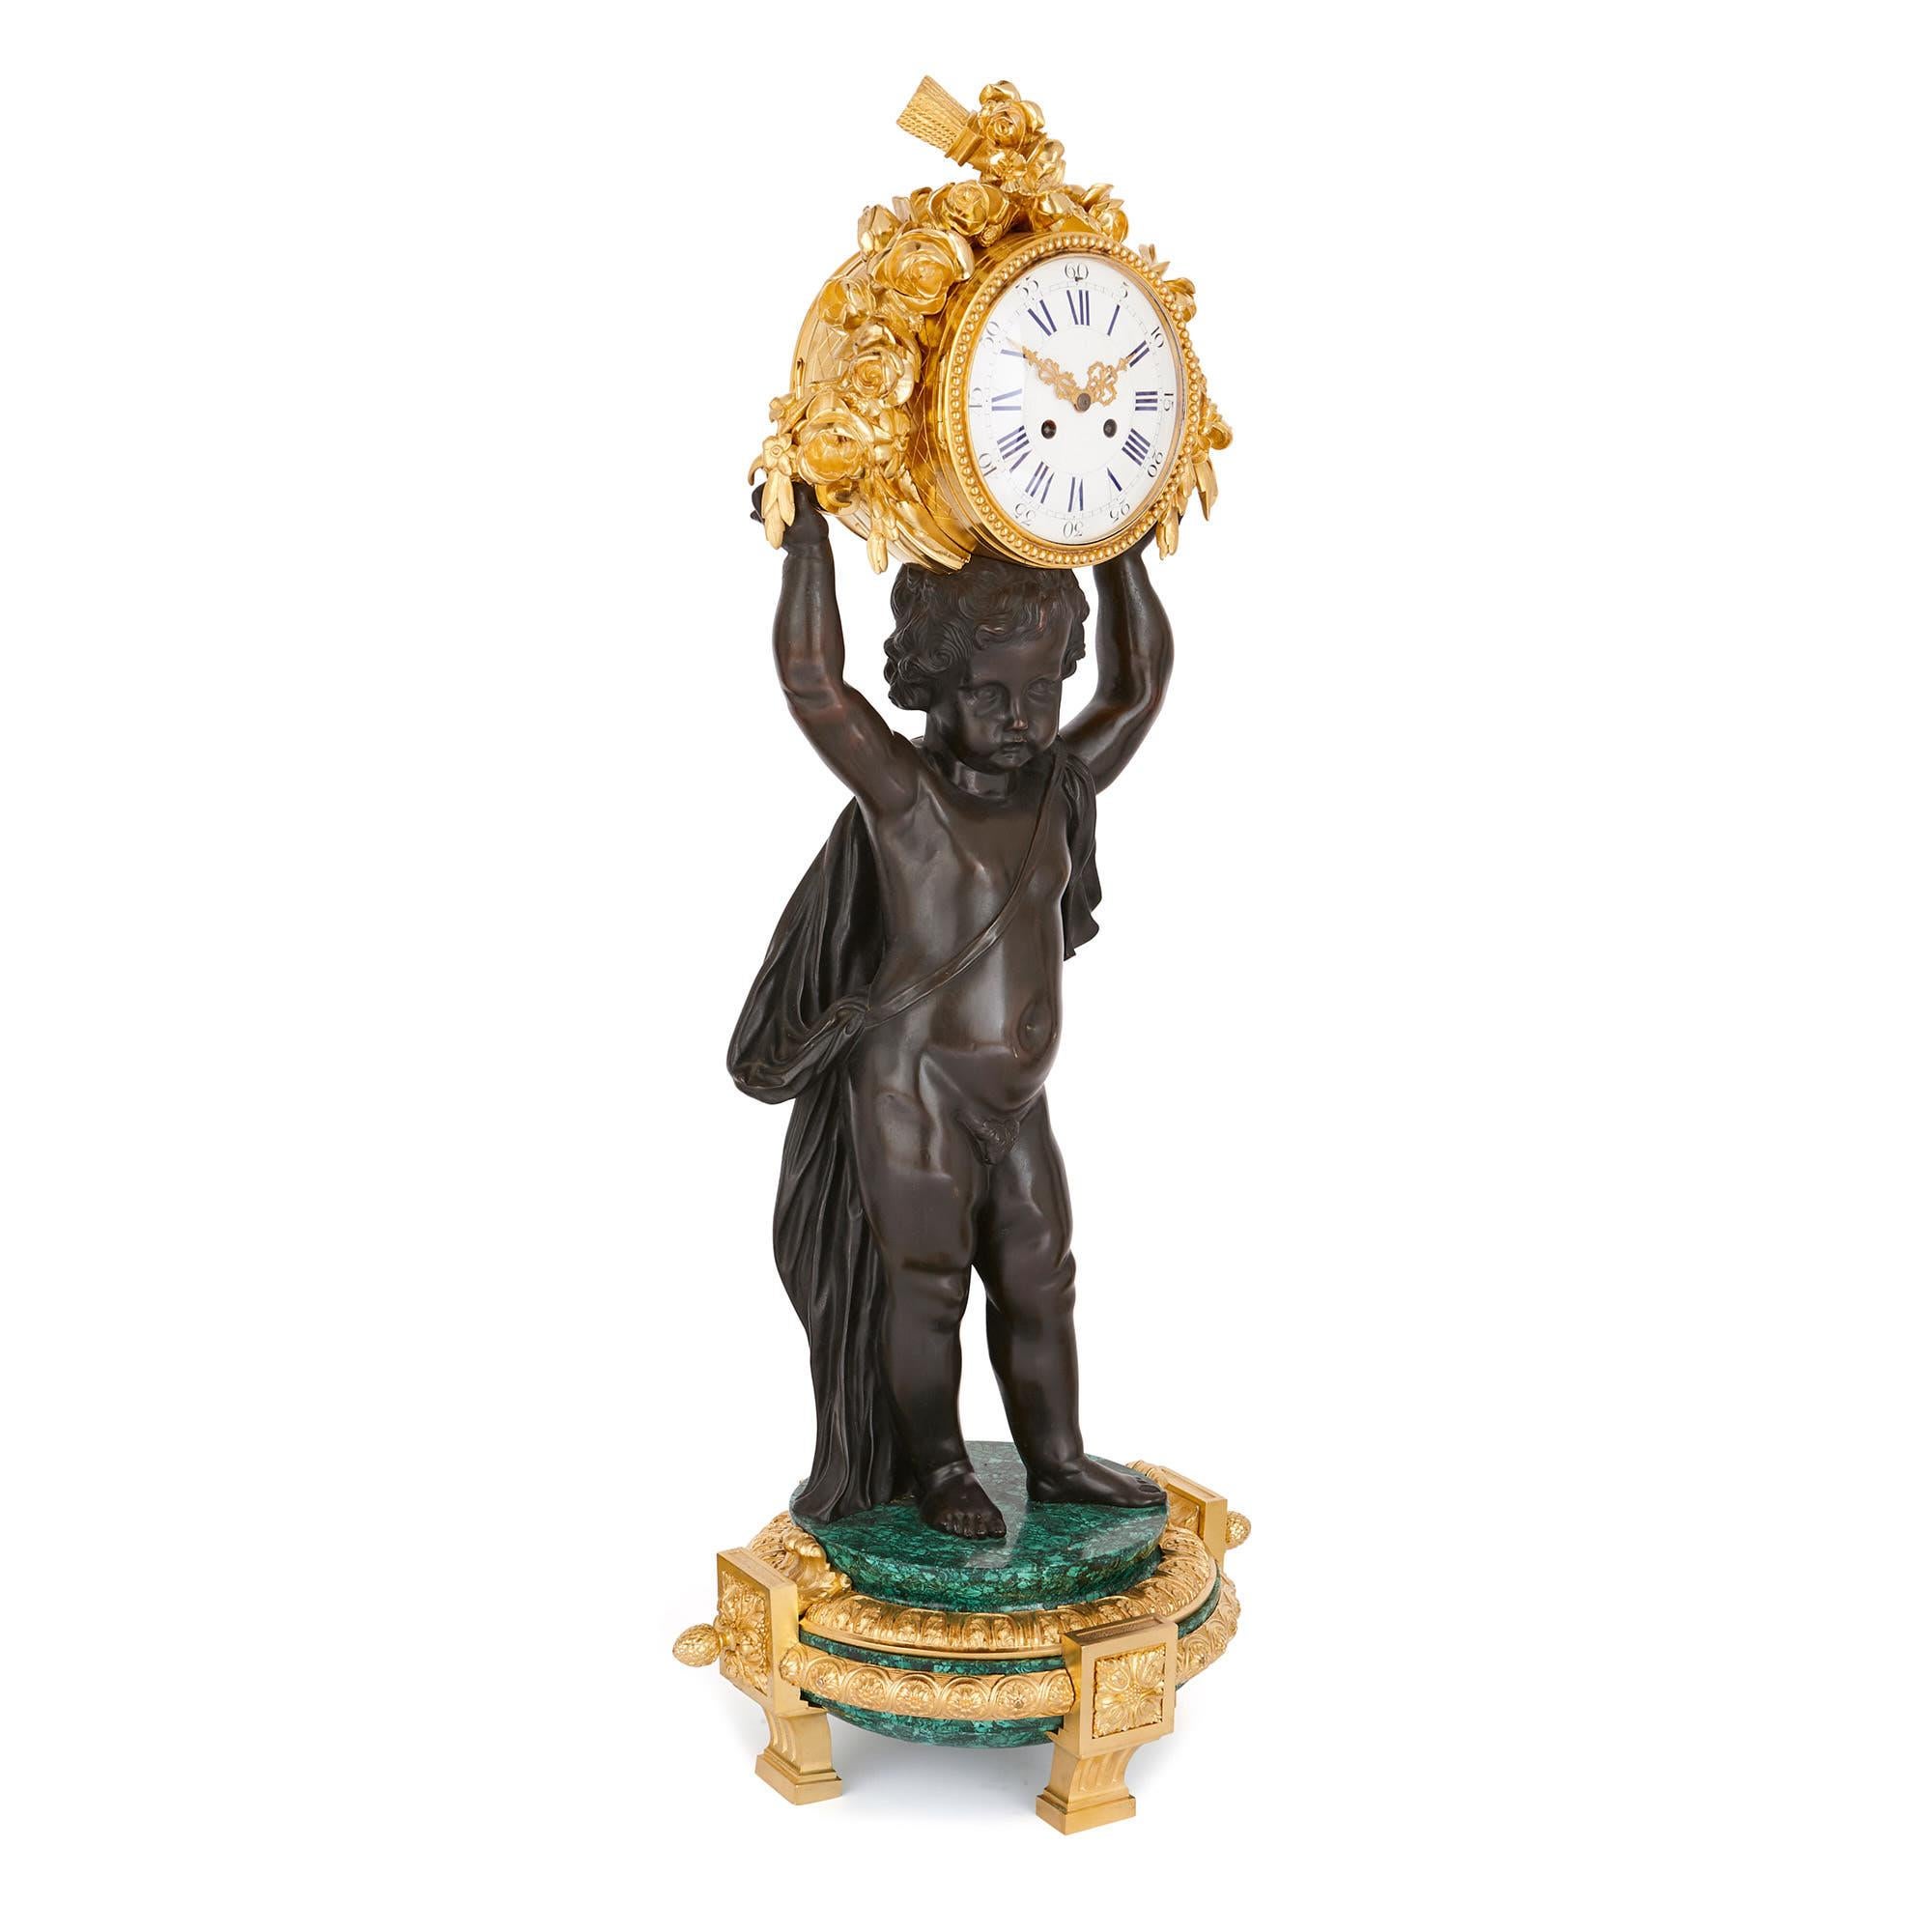 Ce majestueux ensemble de style néoclassique - dont l'horloge mesure 1m et le candélabre 1m 11cm de hauteur - fera une déclaration audacieuse dans un intérieur. Avec ses magnifiques putti en bronze patiné, le design transcende les frontières entre